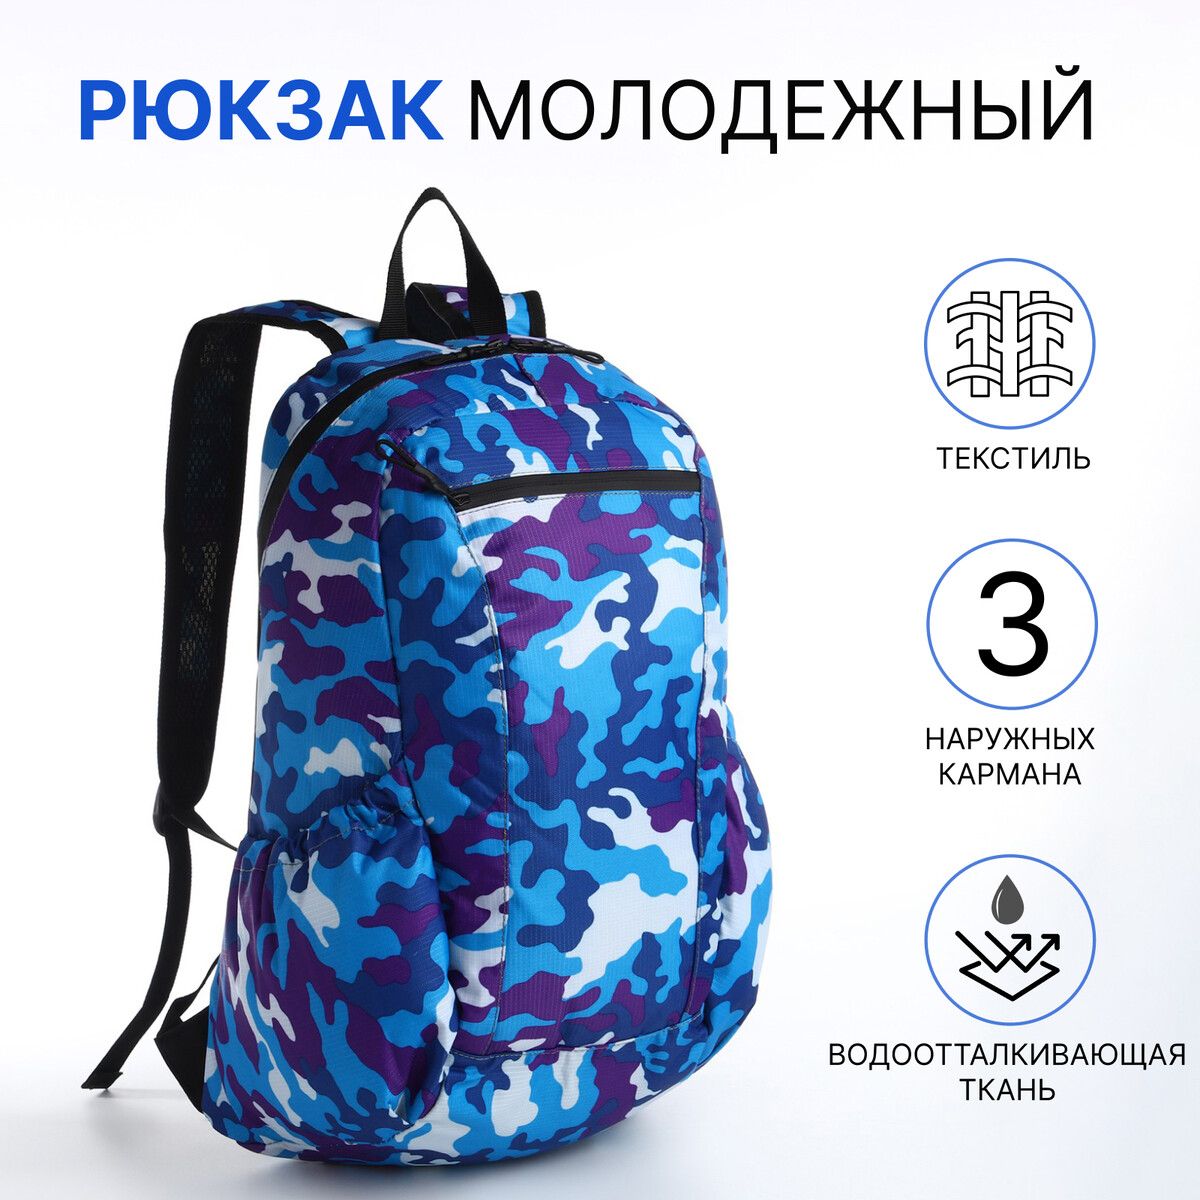 Рюкзак молодежный, водонепроницаемый на молнии, 3 кармана, цвет синий